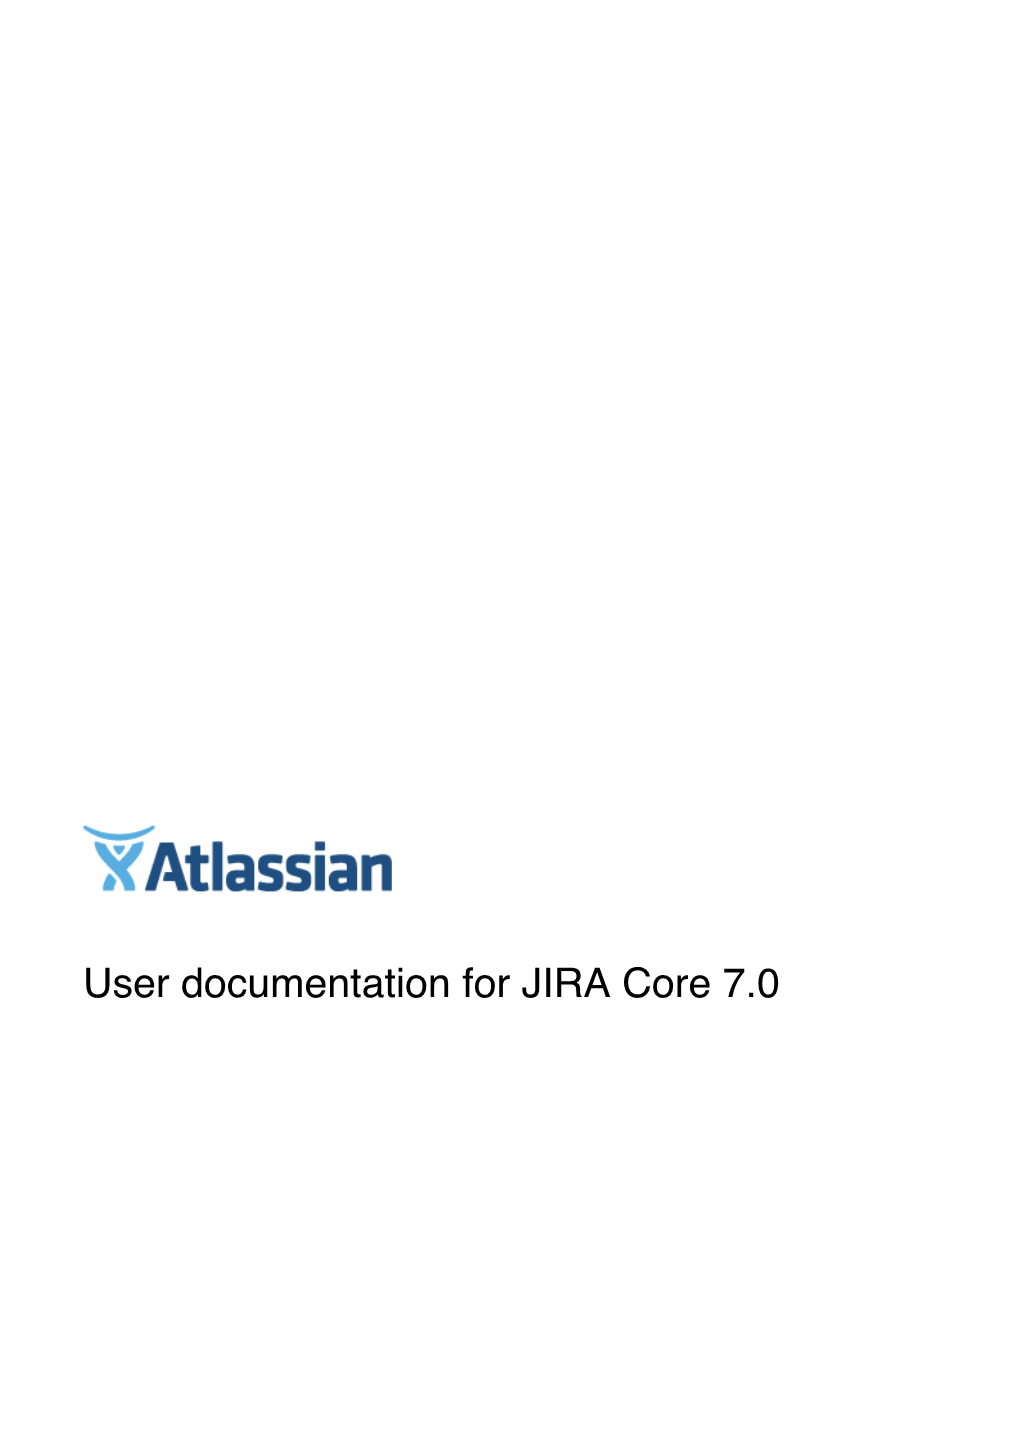 User Documentation for JIRA Core 7.0 User Documentation for JIRA Core Server 7.0 2